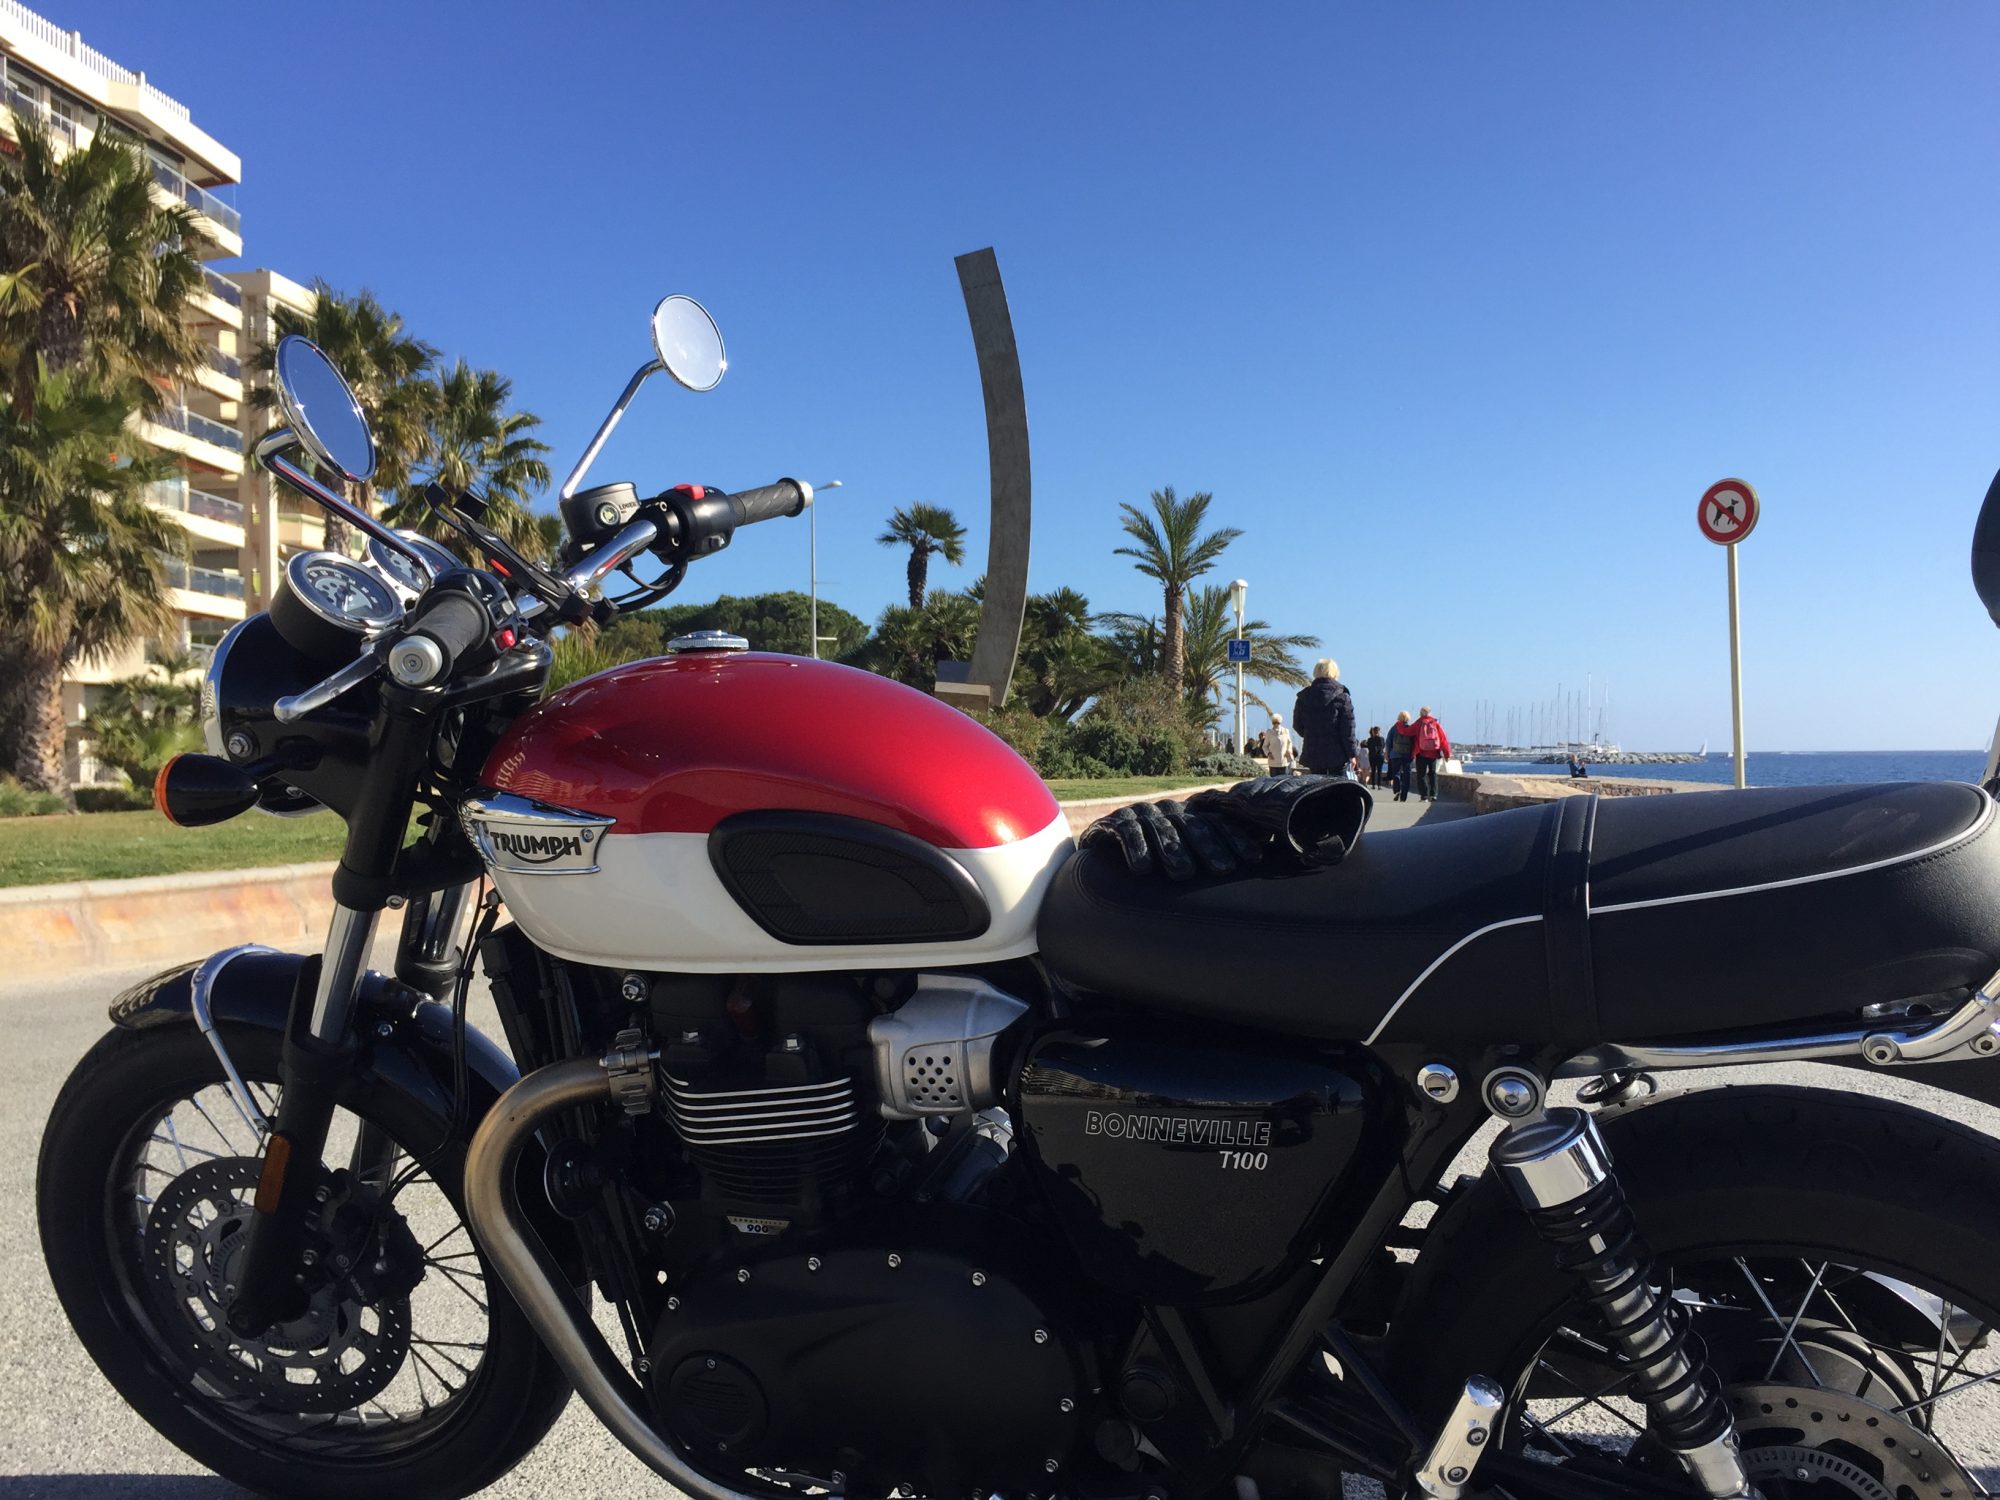 Louer une moto à Cannes